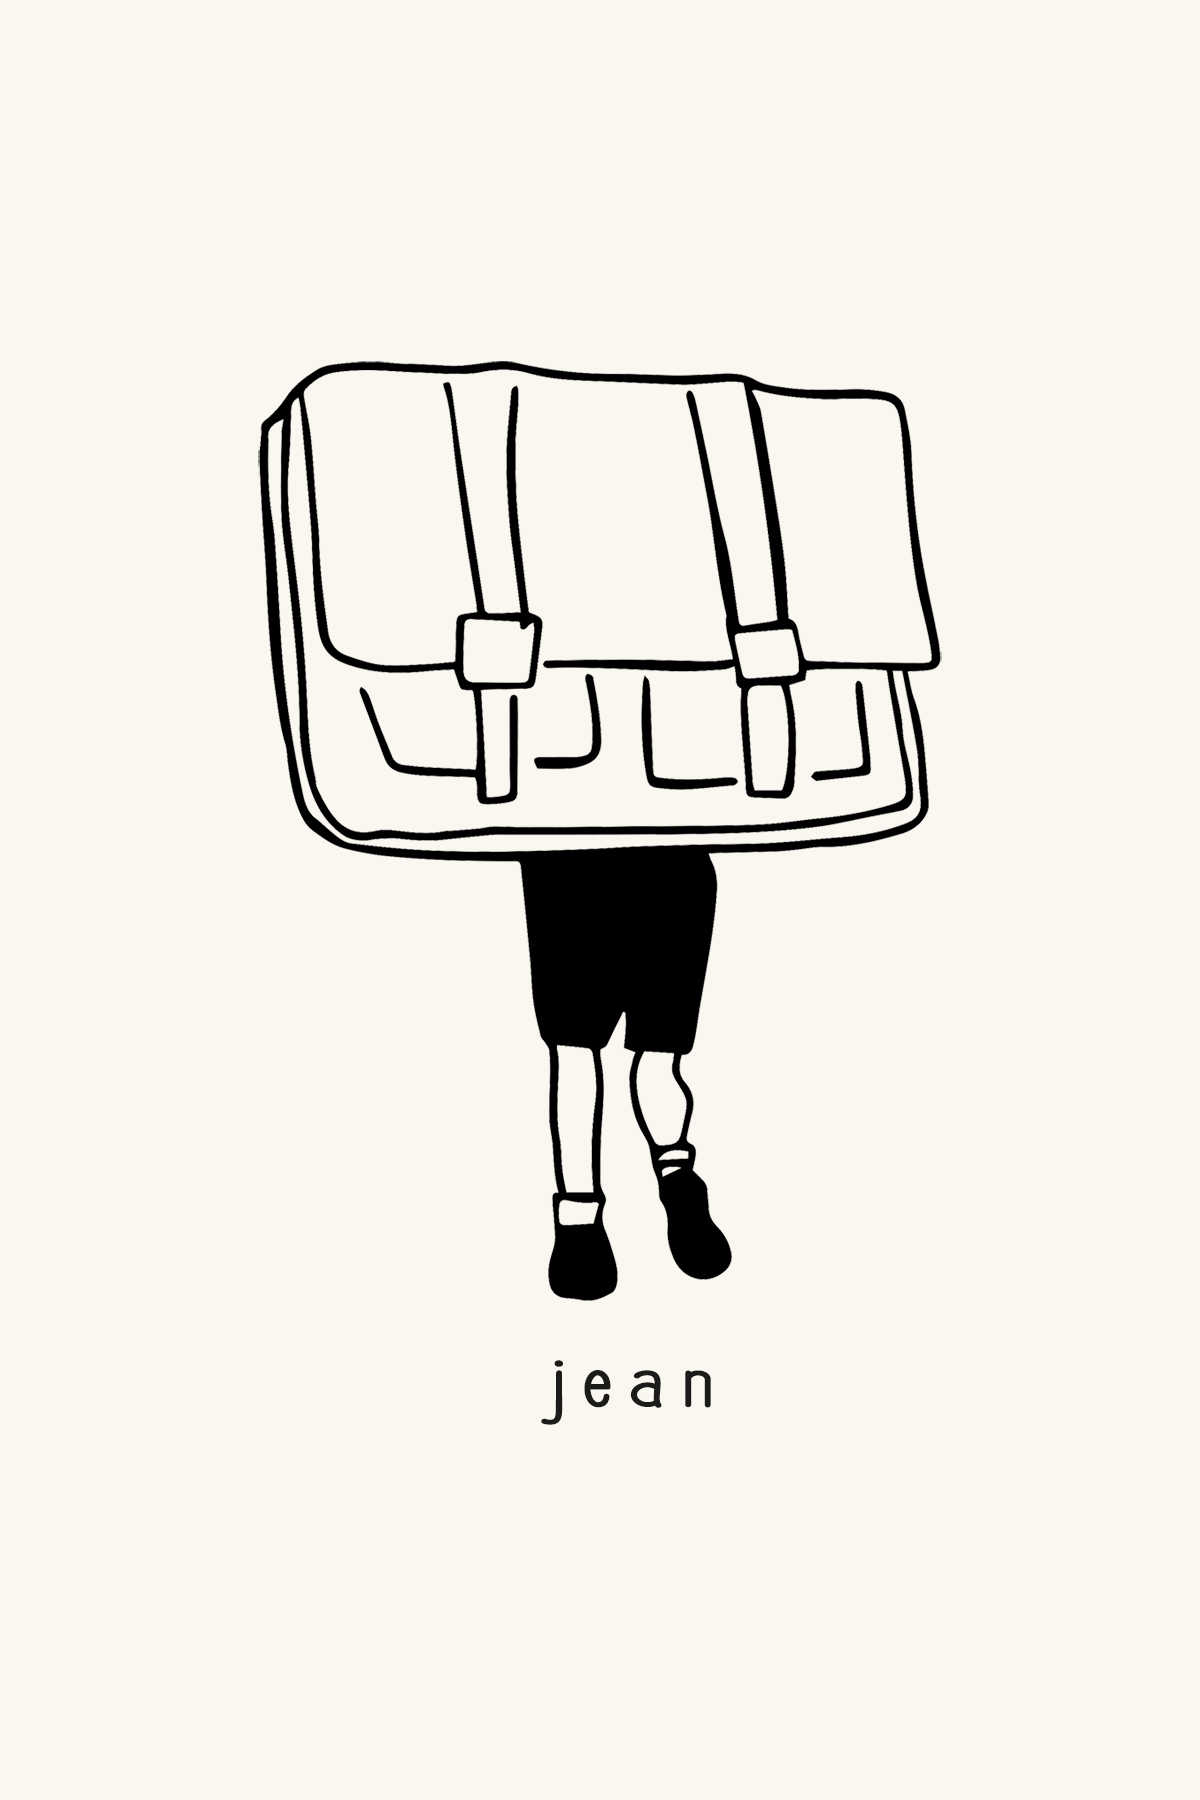 Dibujo de un niño que lleva una mochila tan grande que solo vemos sus piernas y pies